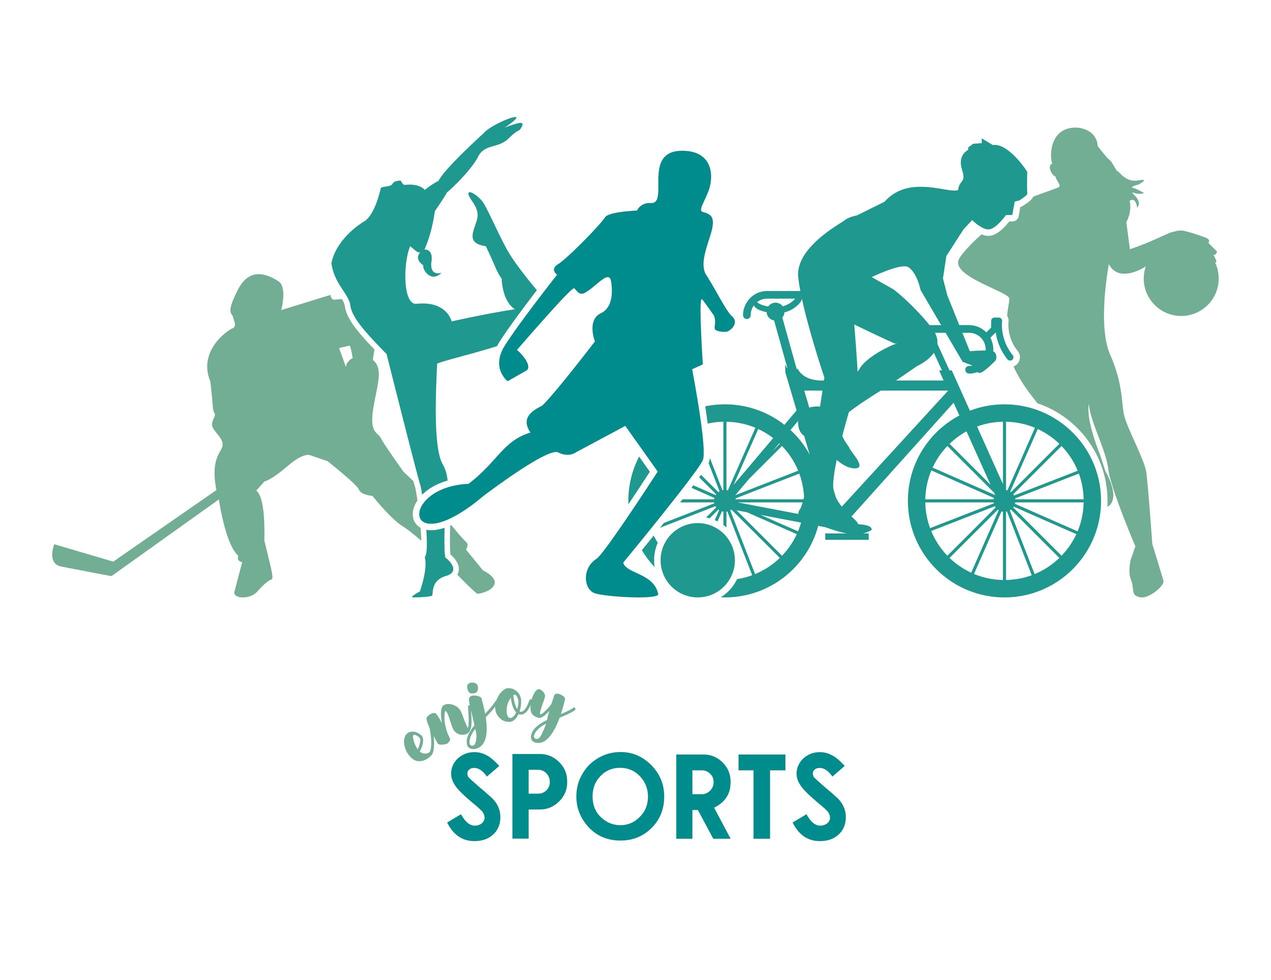 Cartel de tiempo deportivo con siluetas de figuras de atletas verdes vector